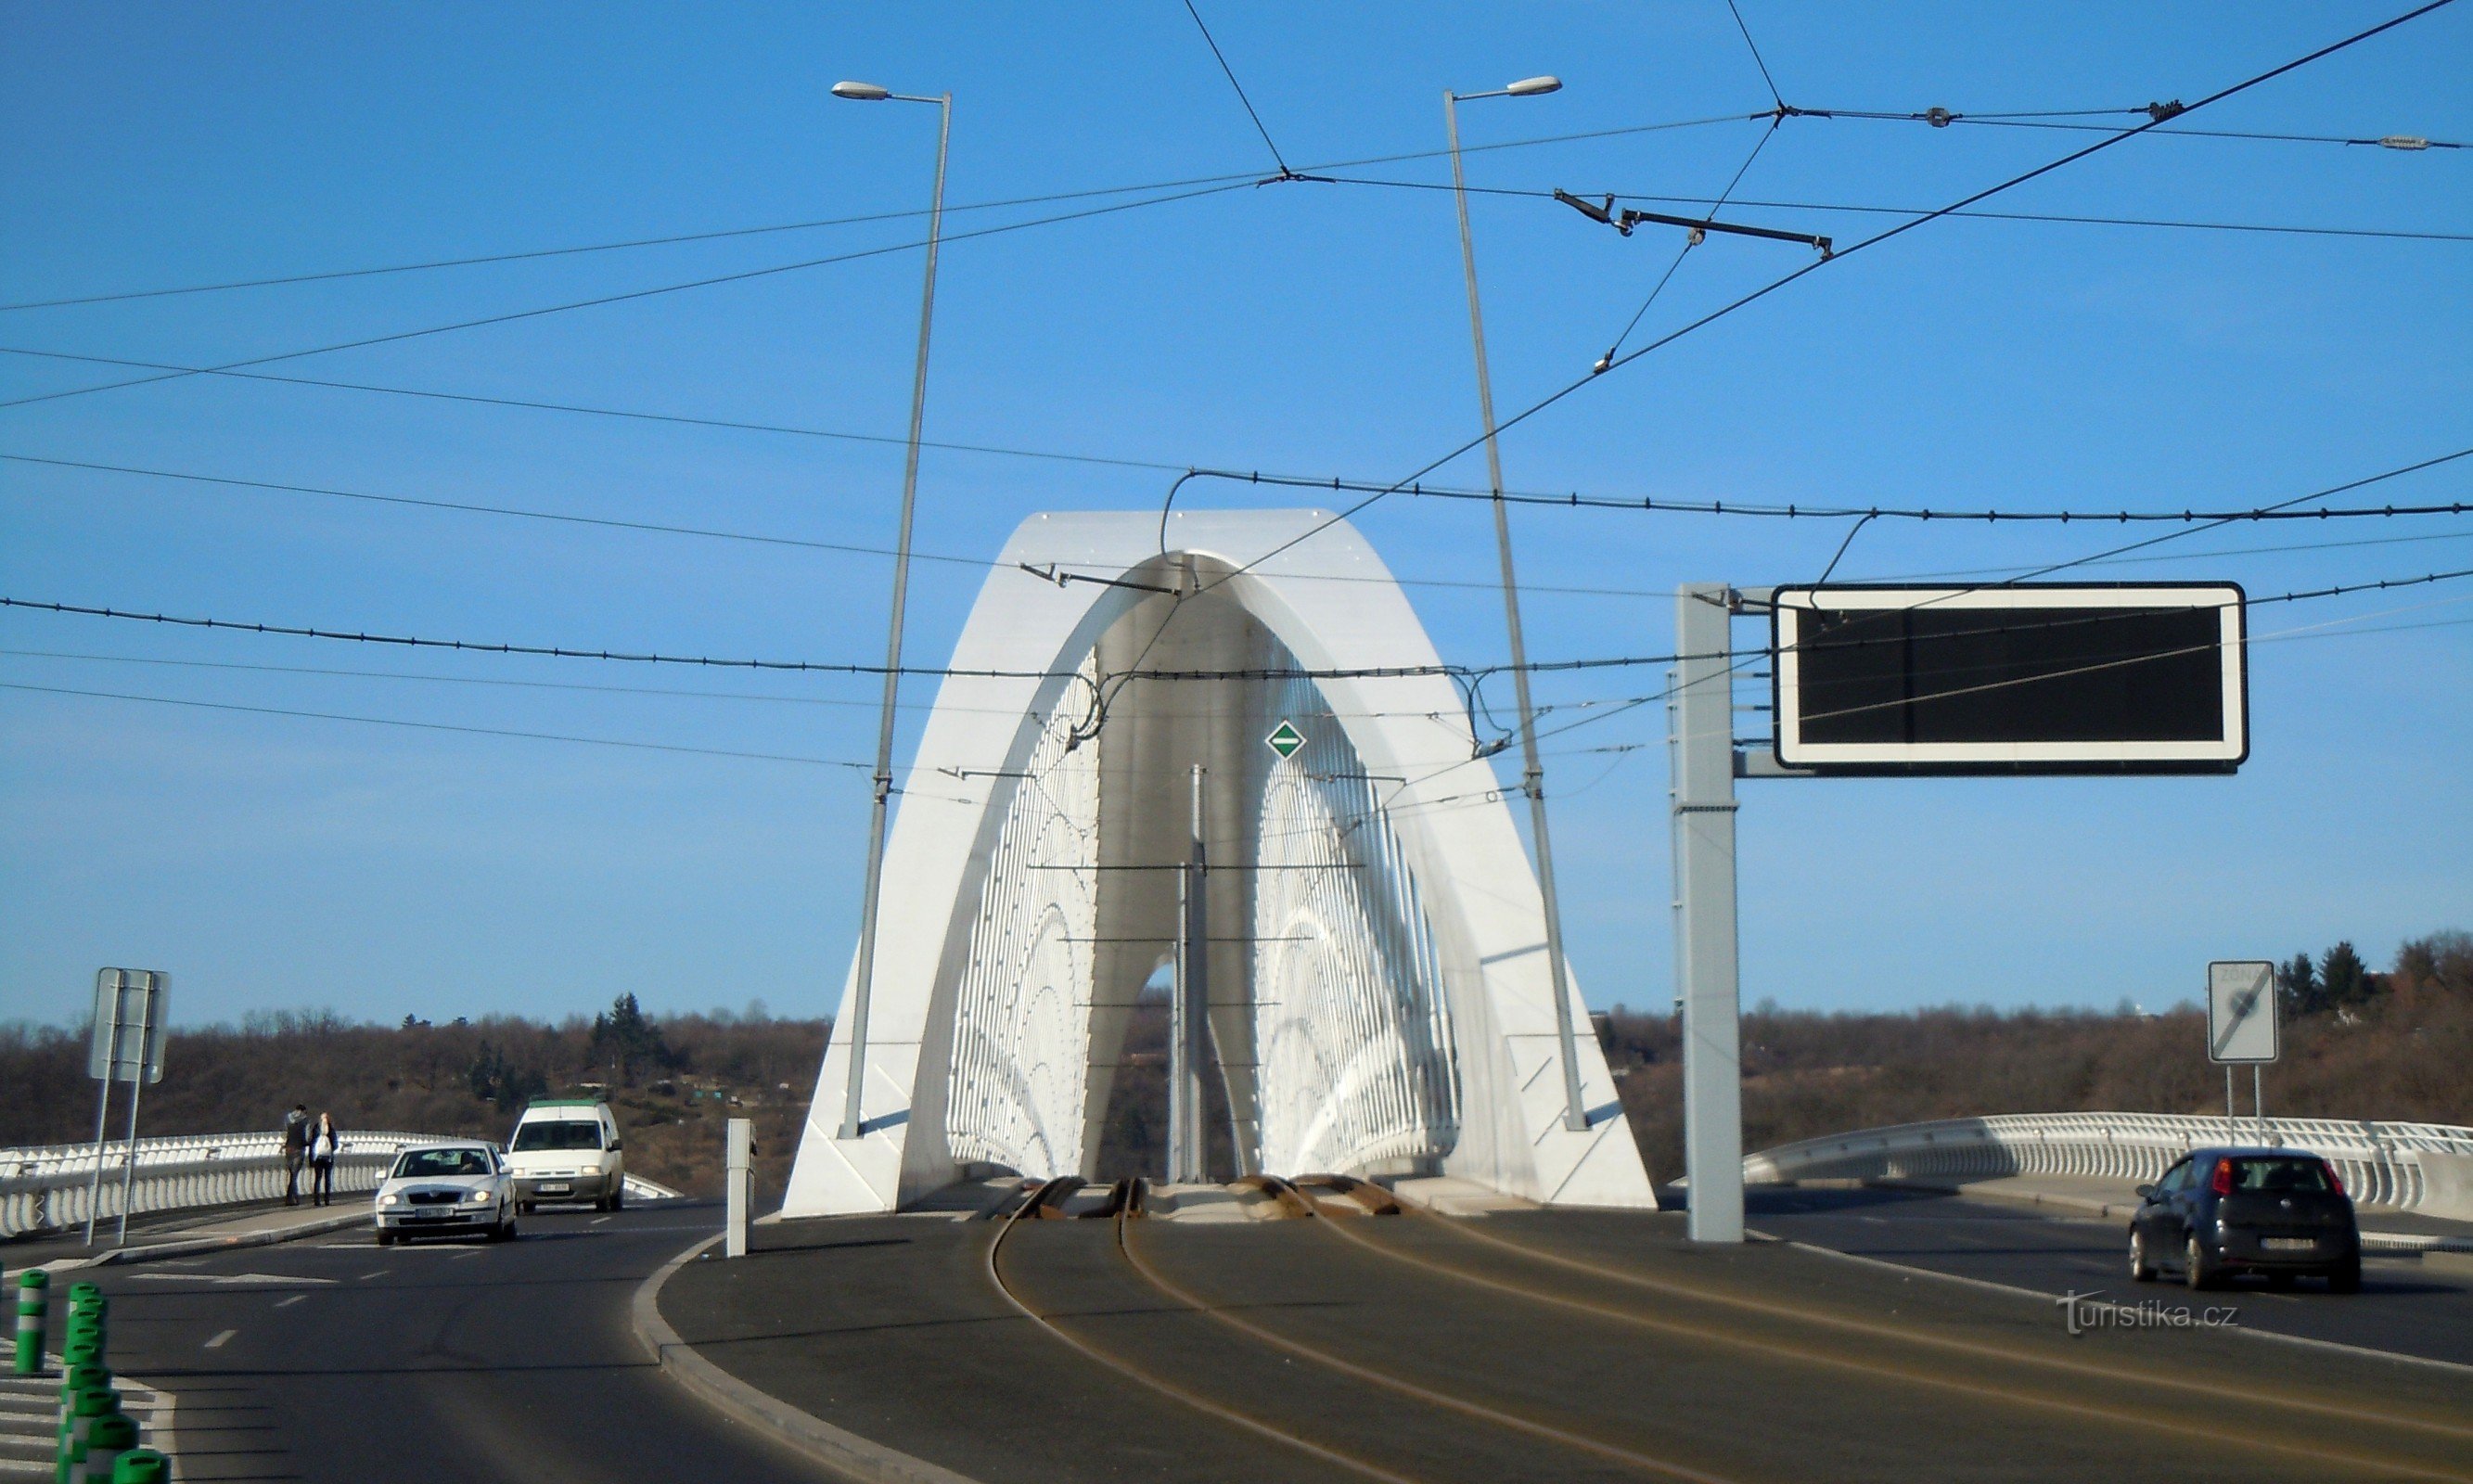 Trojský most notranja karoserija tramvaja